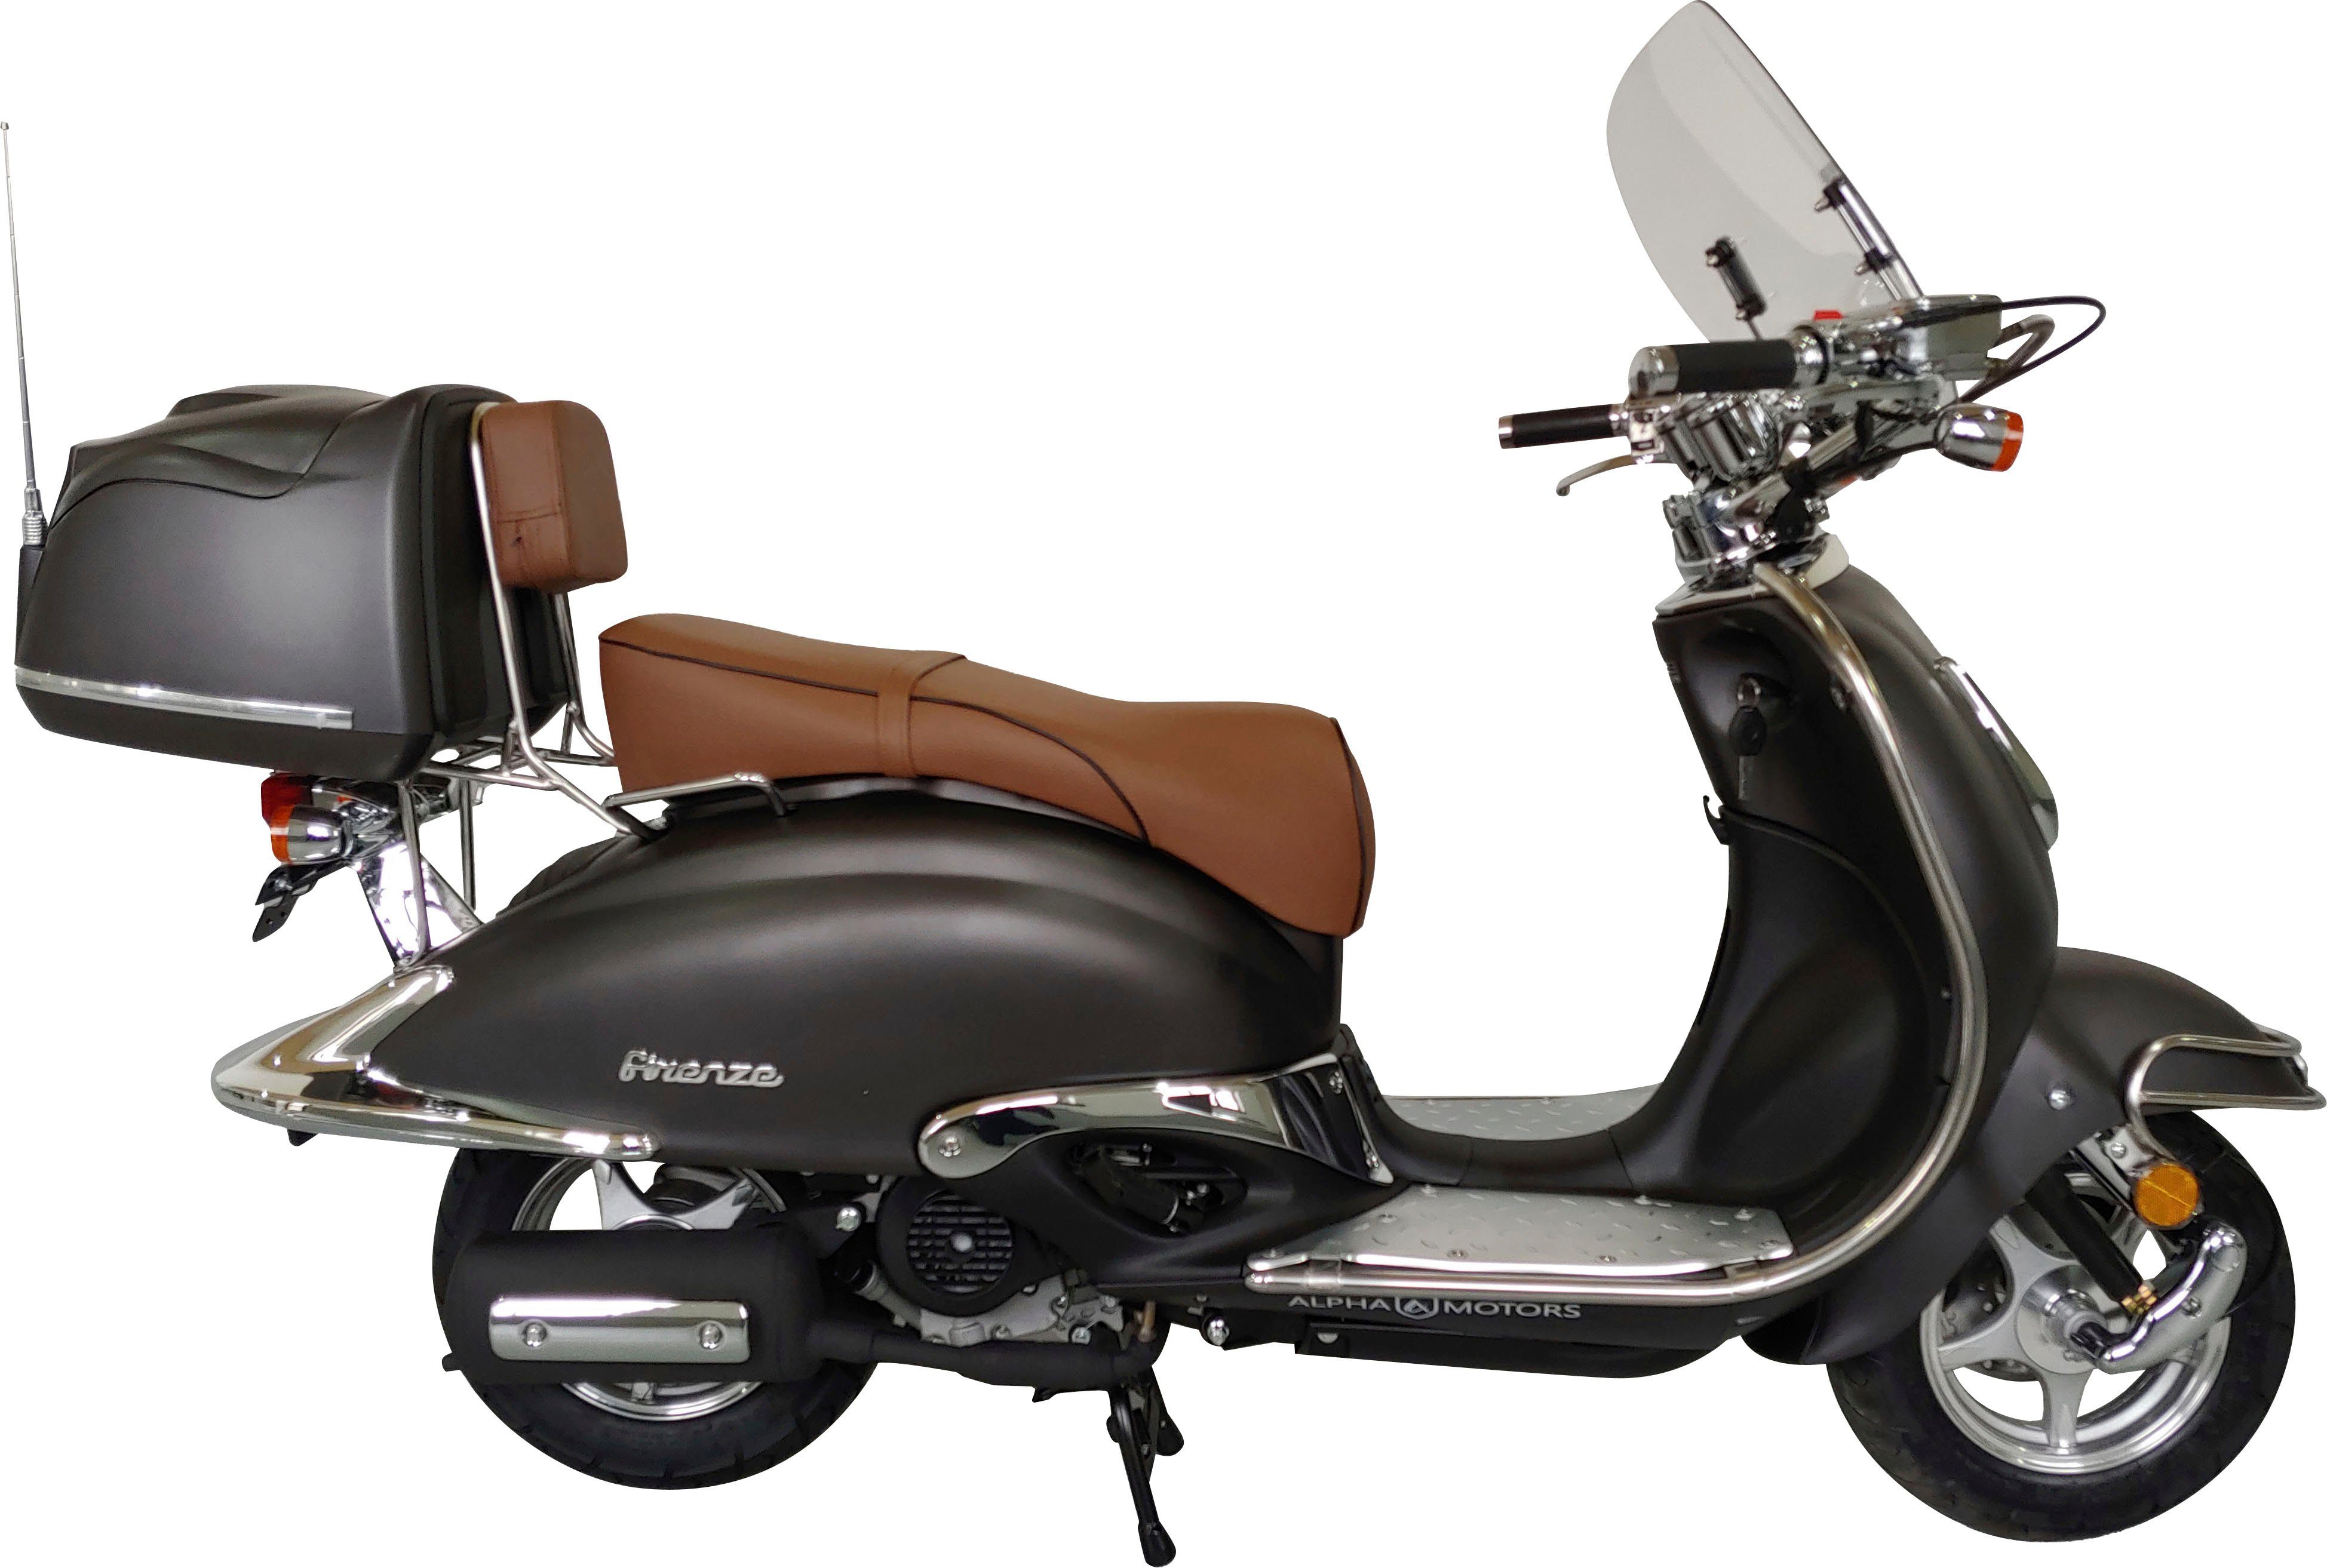 Firenze braun 50 45 | Motorroller Euro Motors 5 mattschwarz Limited, ccm, Alpha km/h,